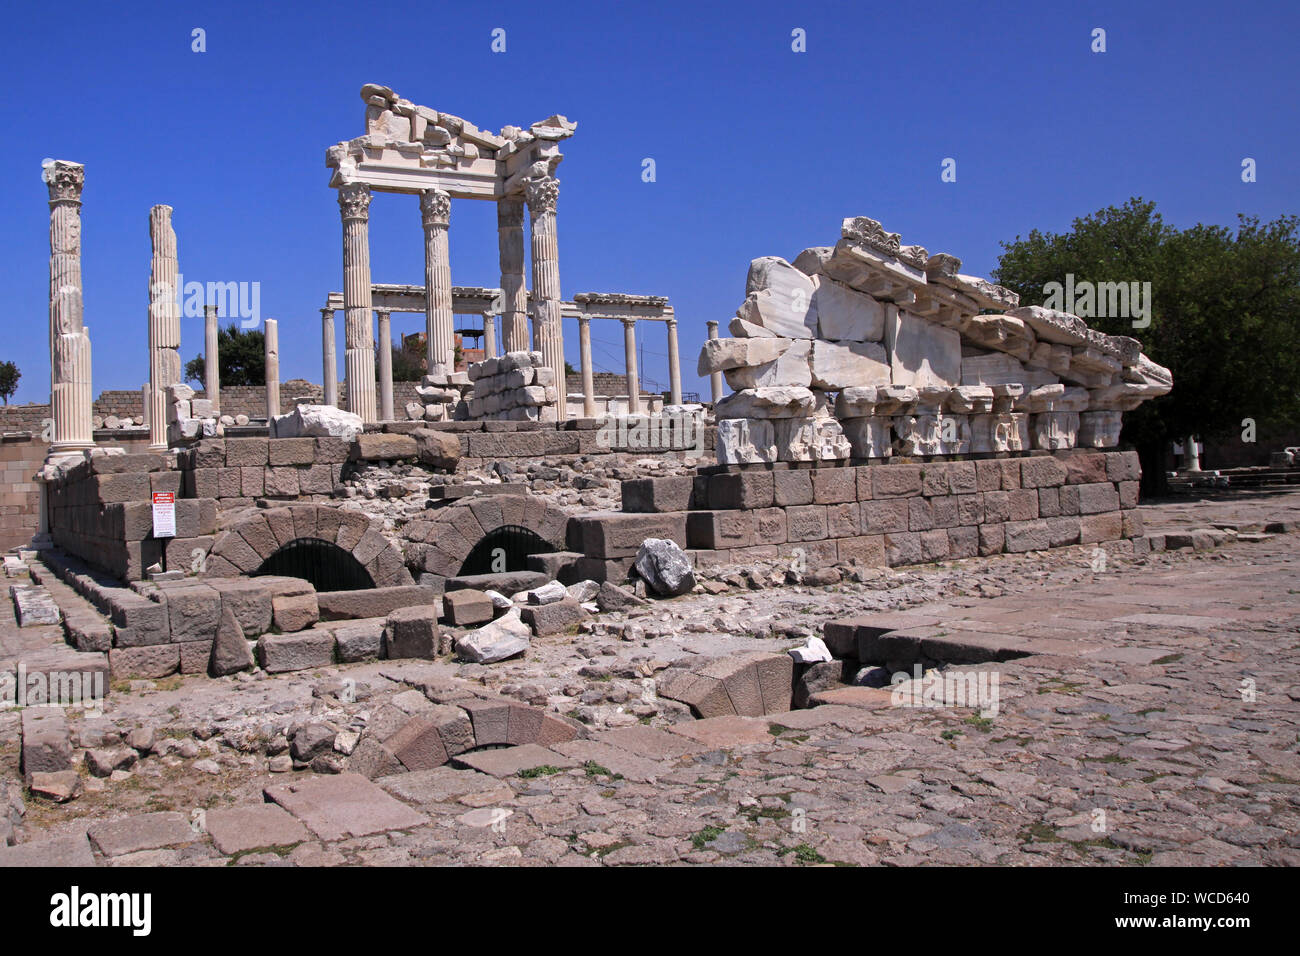 La acrópolis de Pérgamo era la capital de la dinastía Attalid Helenística, un importante centro de aprendizaje en el mundo antiguo. Foto de stock